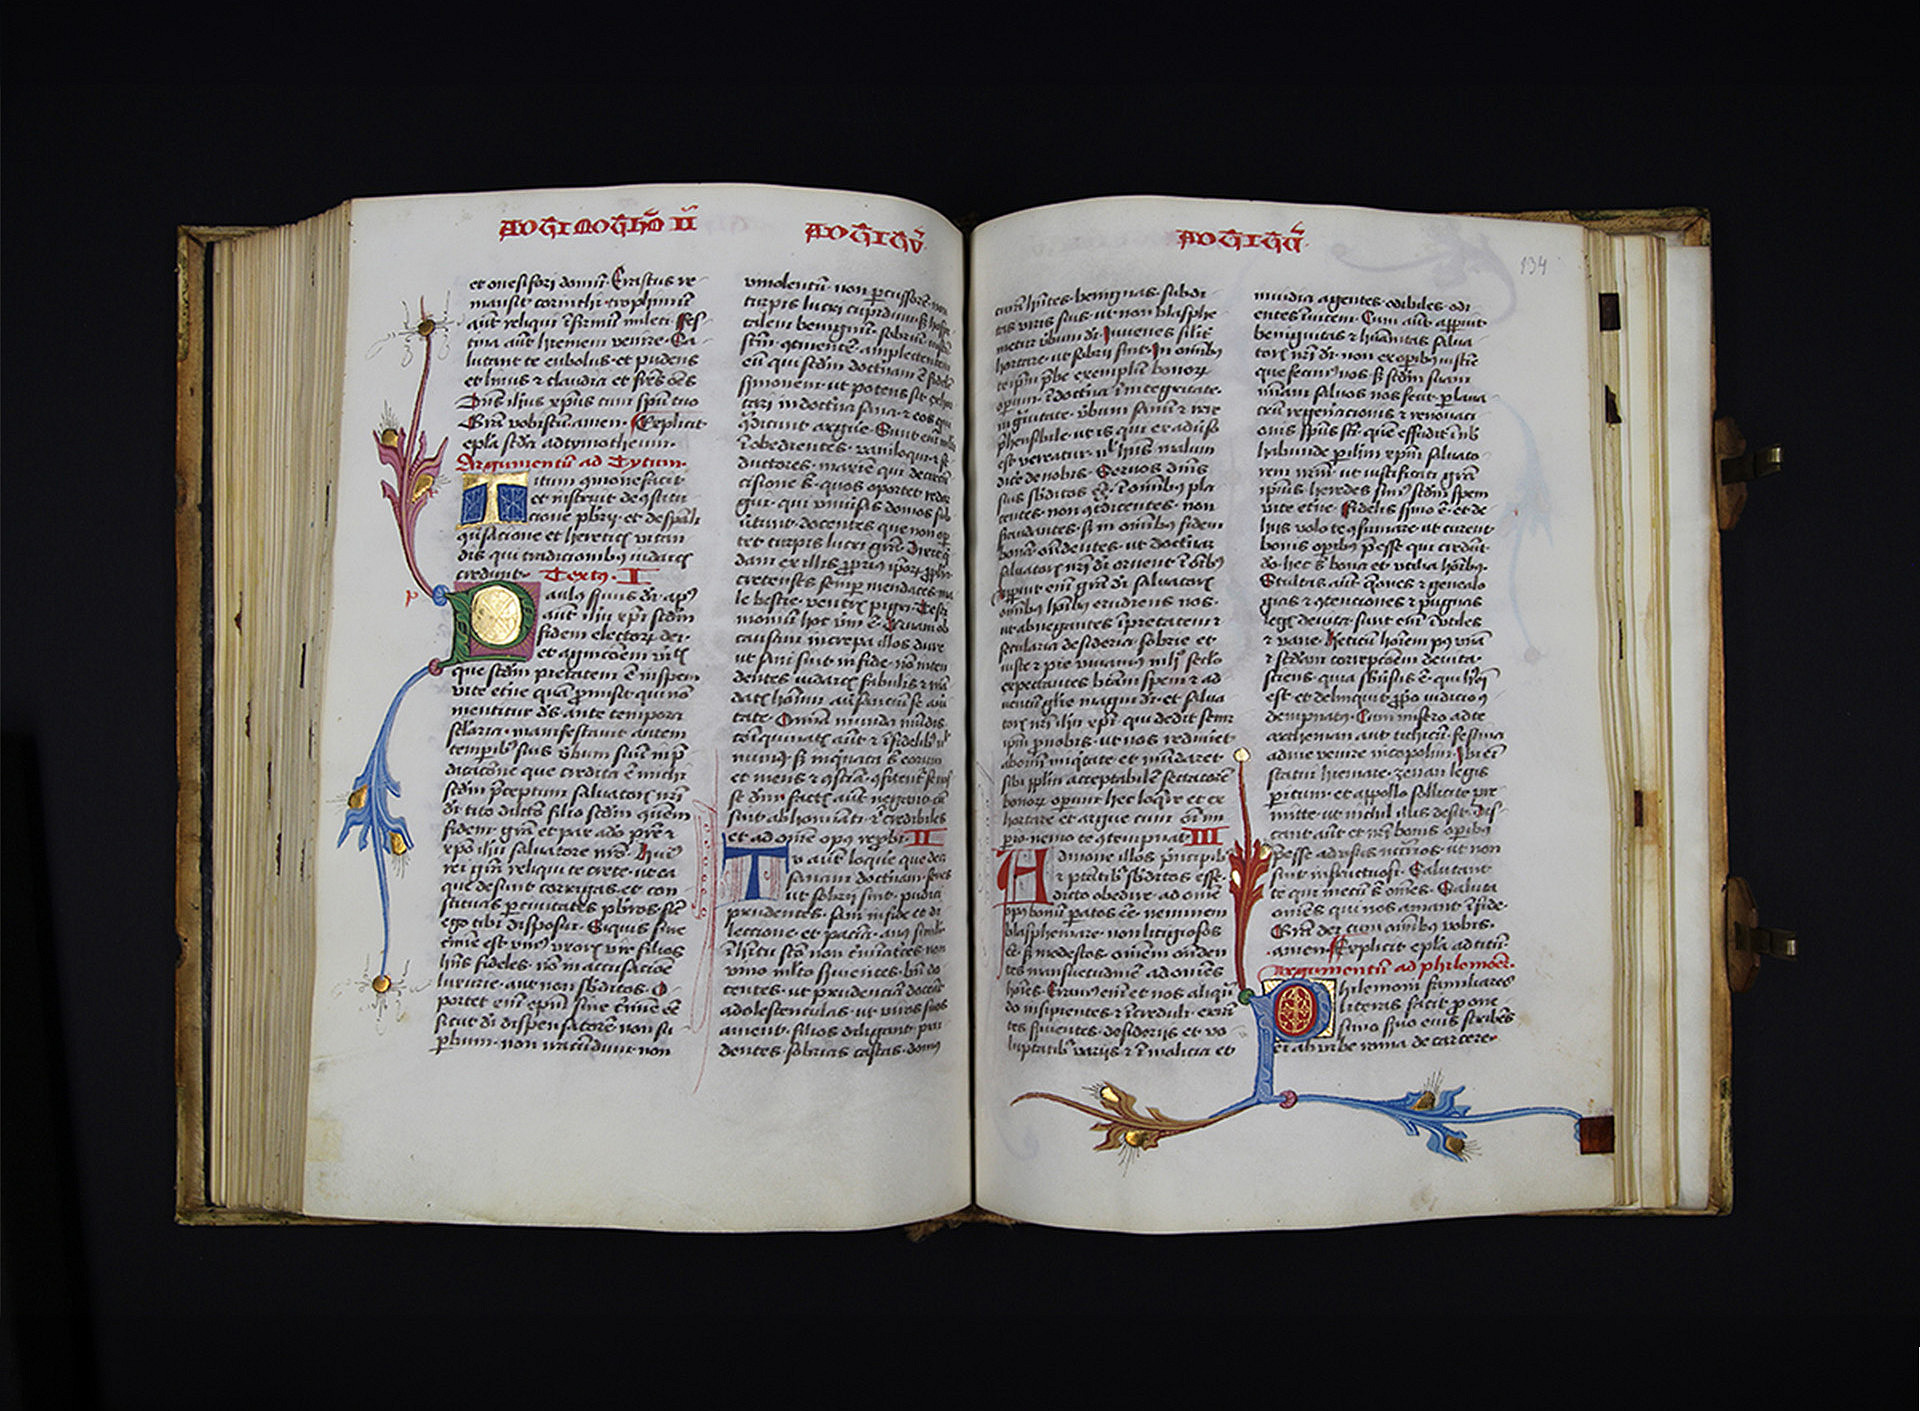 Neues Testament mit Prologen, aufwändiges Originalwerk mit Goldakzenten aufgeschlagen vor schwarzem Grund. Uni Graz/Restaurierung 